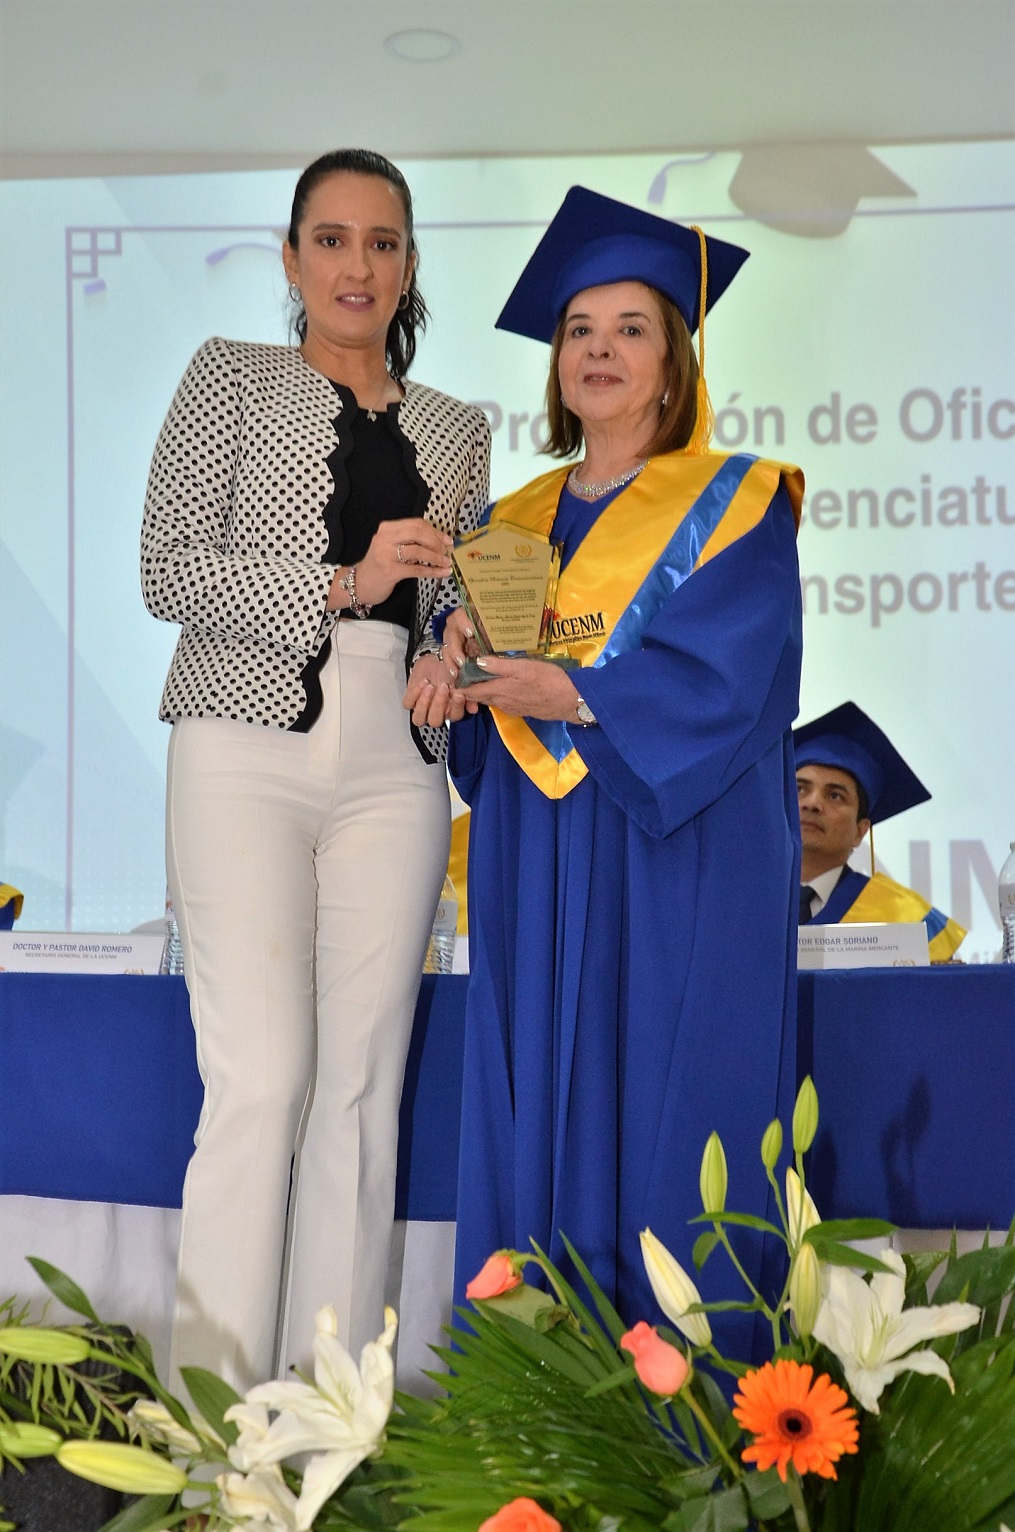 En un hecho Histórico: UCENM Gradúa la primera promoción de licenciados en Gestión Portuaria y Transporte Marítimo